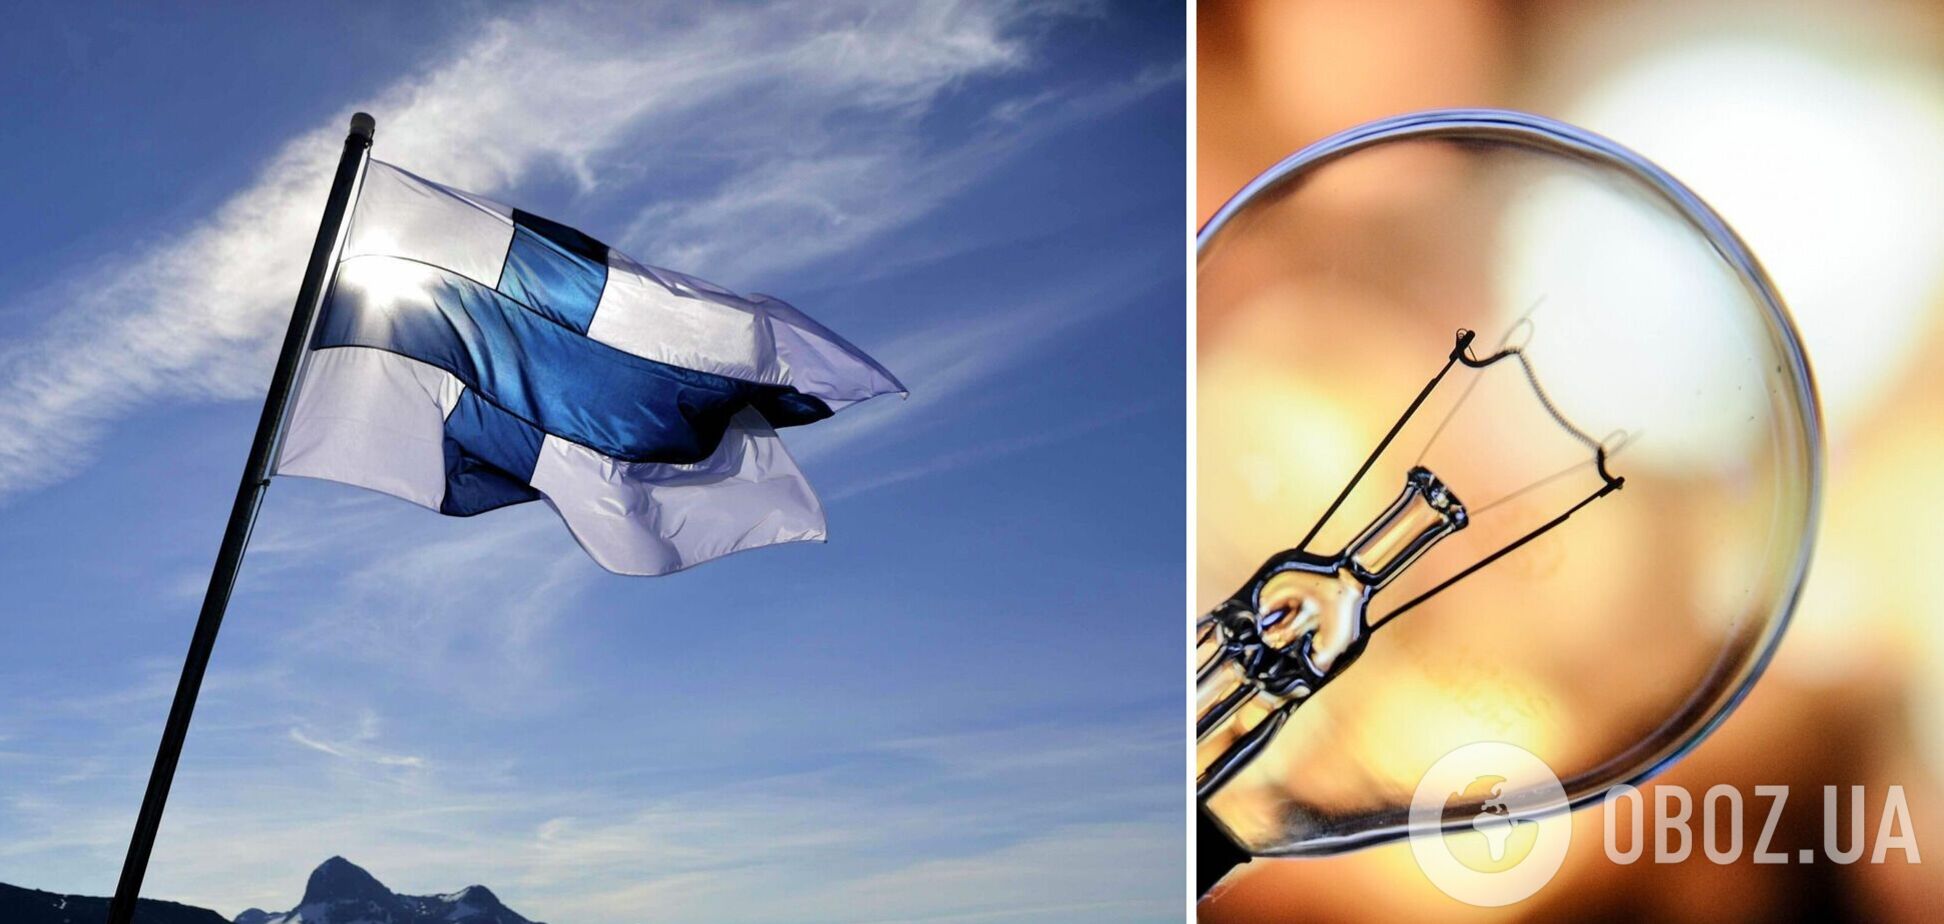 Фінляндія майбутньої зими може зіткнутися з нестачею електроенергії